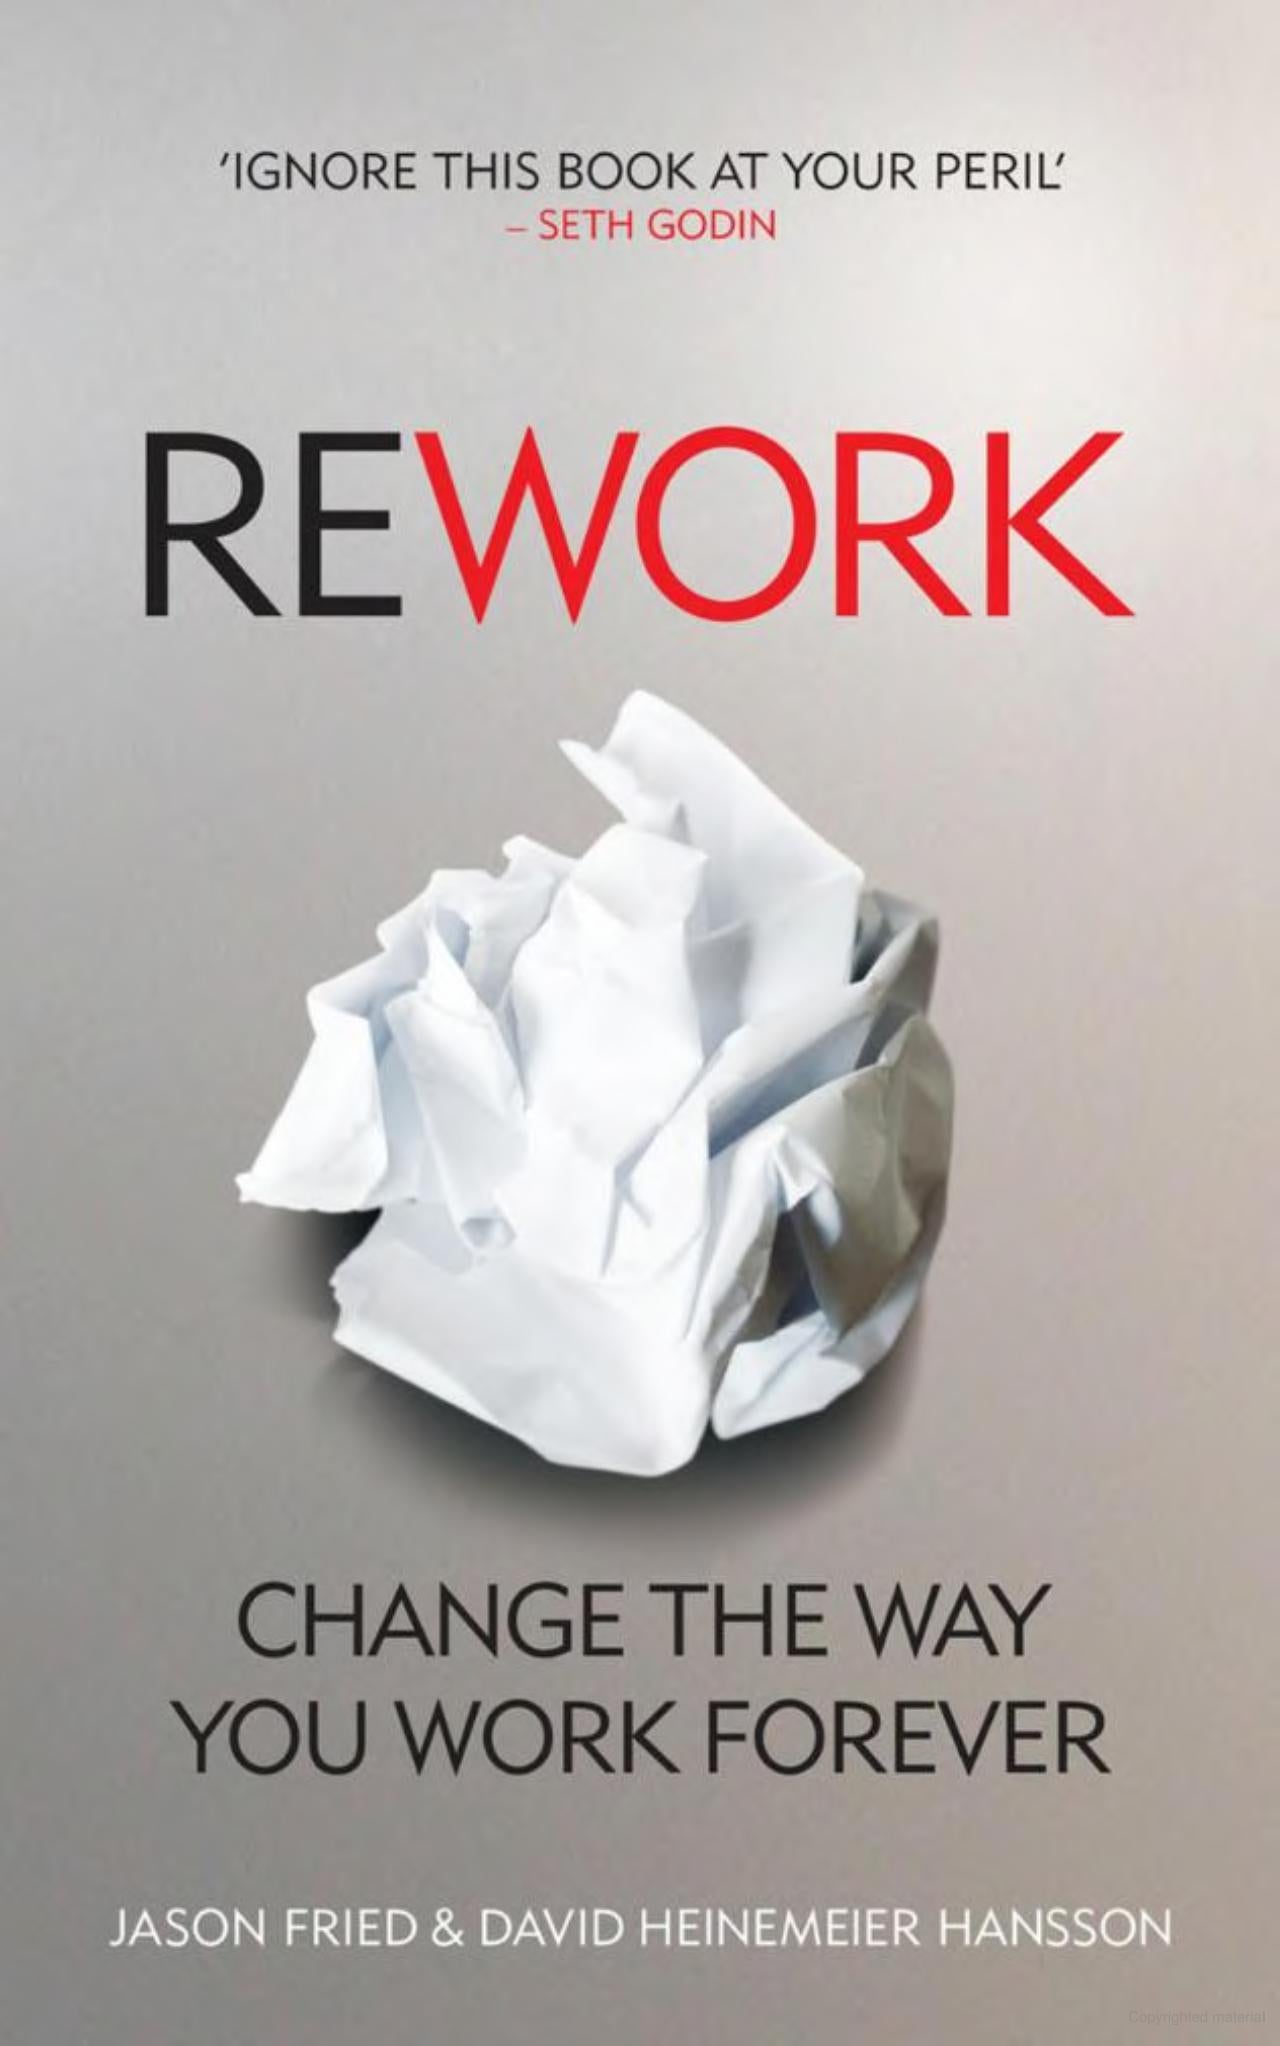 Rework
Book by David Heinemeier Hansson and Jason Fried